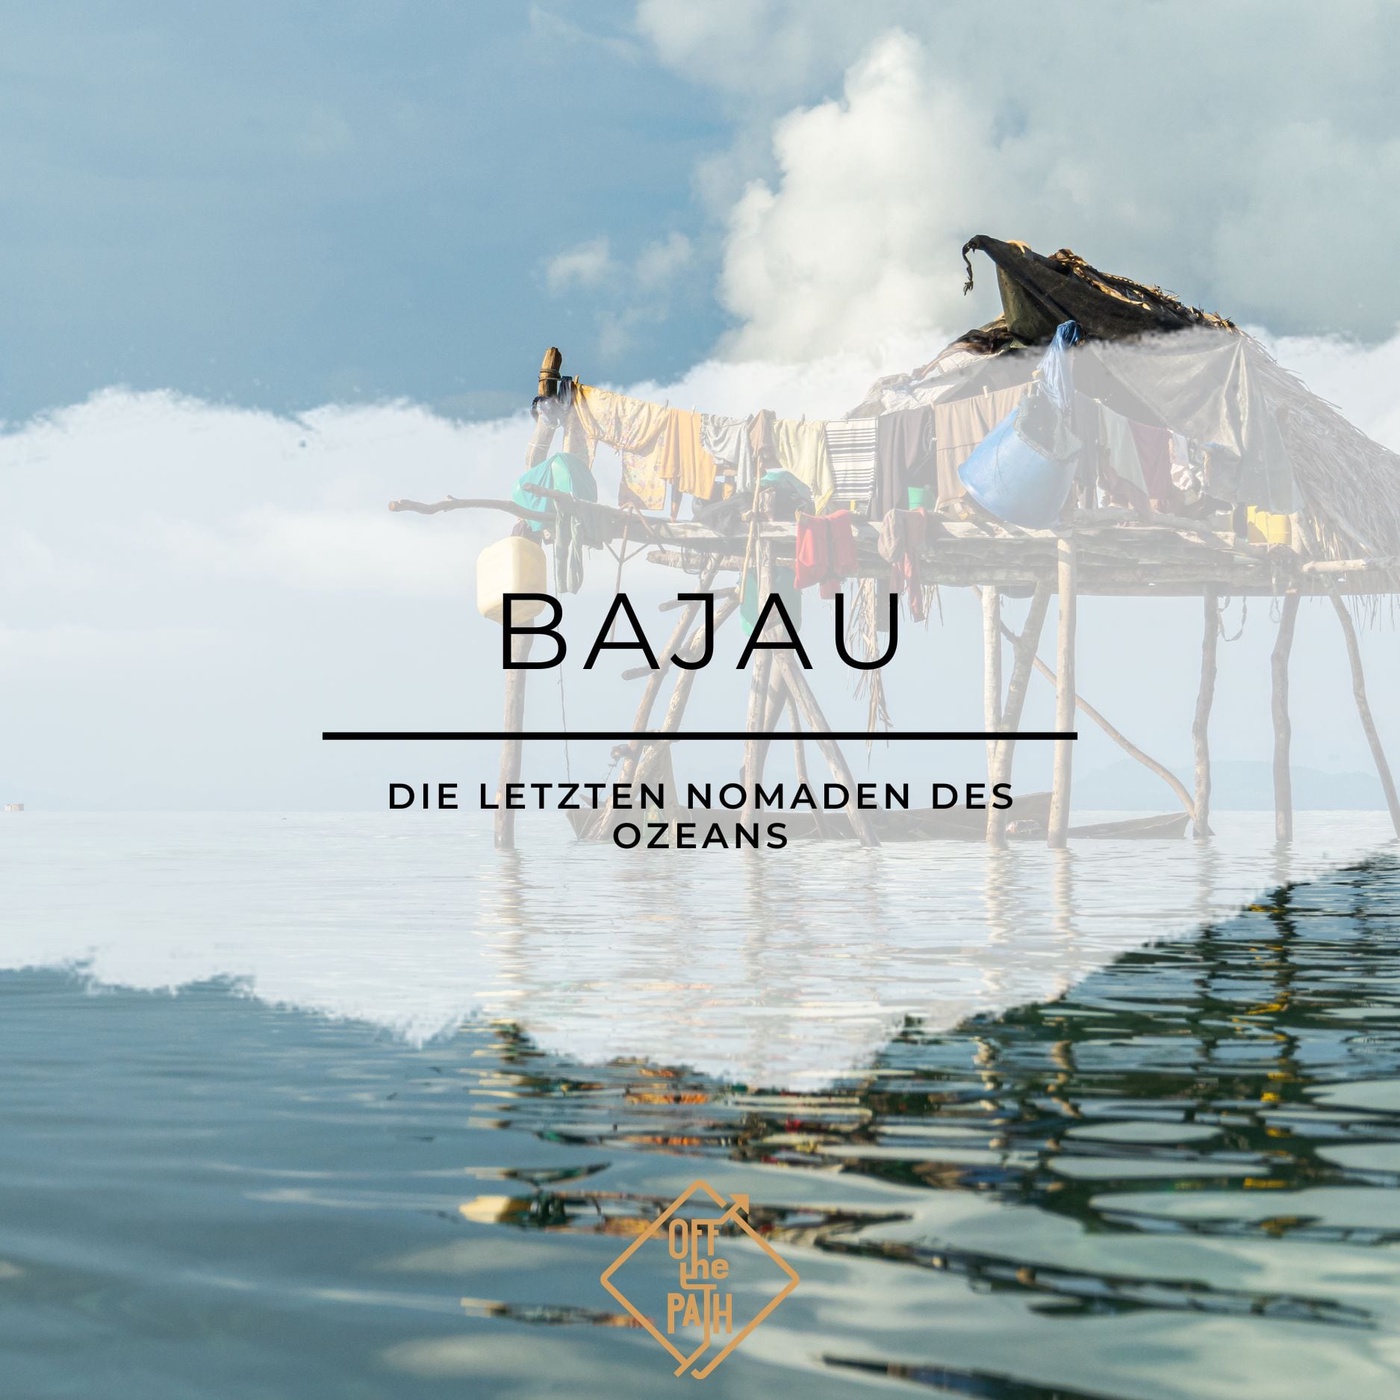 Die letzten Nomaden des Ozeans: Eine Reise zu den Bajau